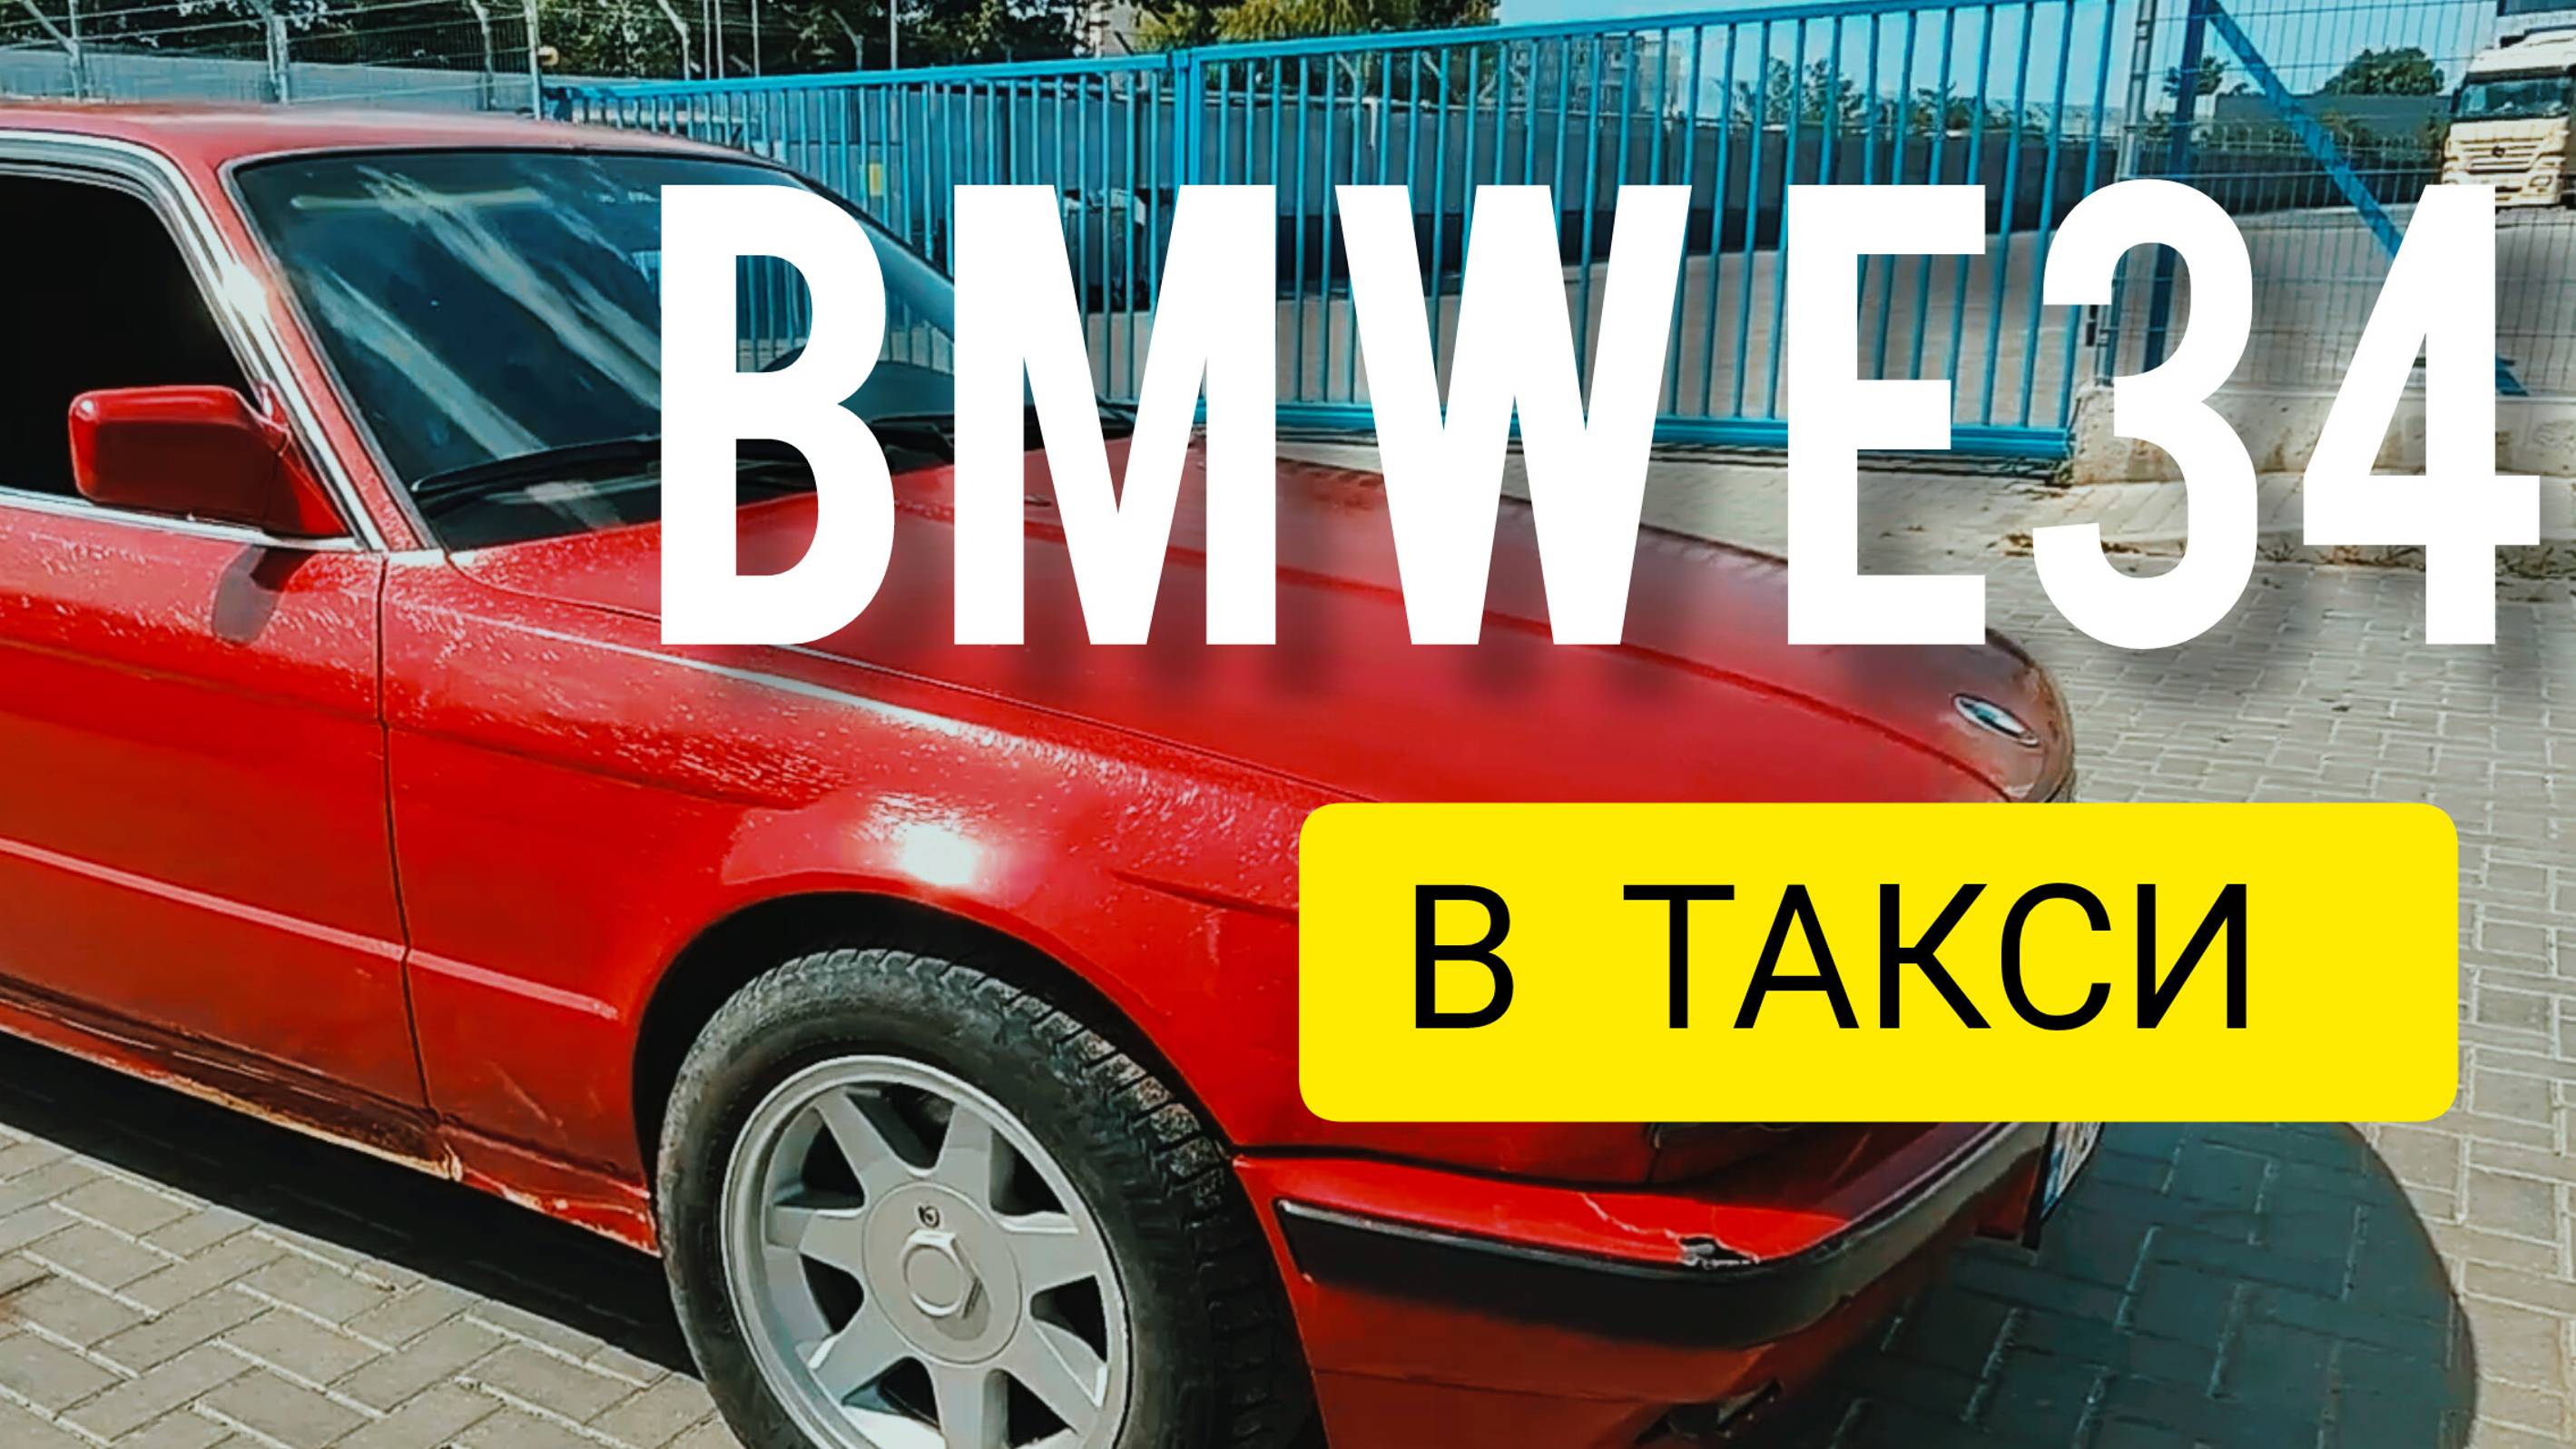 BMW 5 SERIES E34  BUMER IN TAXI  ПРОЕКТ ПОДНЯТЬ С КОЛЕН БМВ 5 СЕРИИ Е34 В ТАКСИ